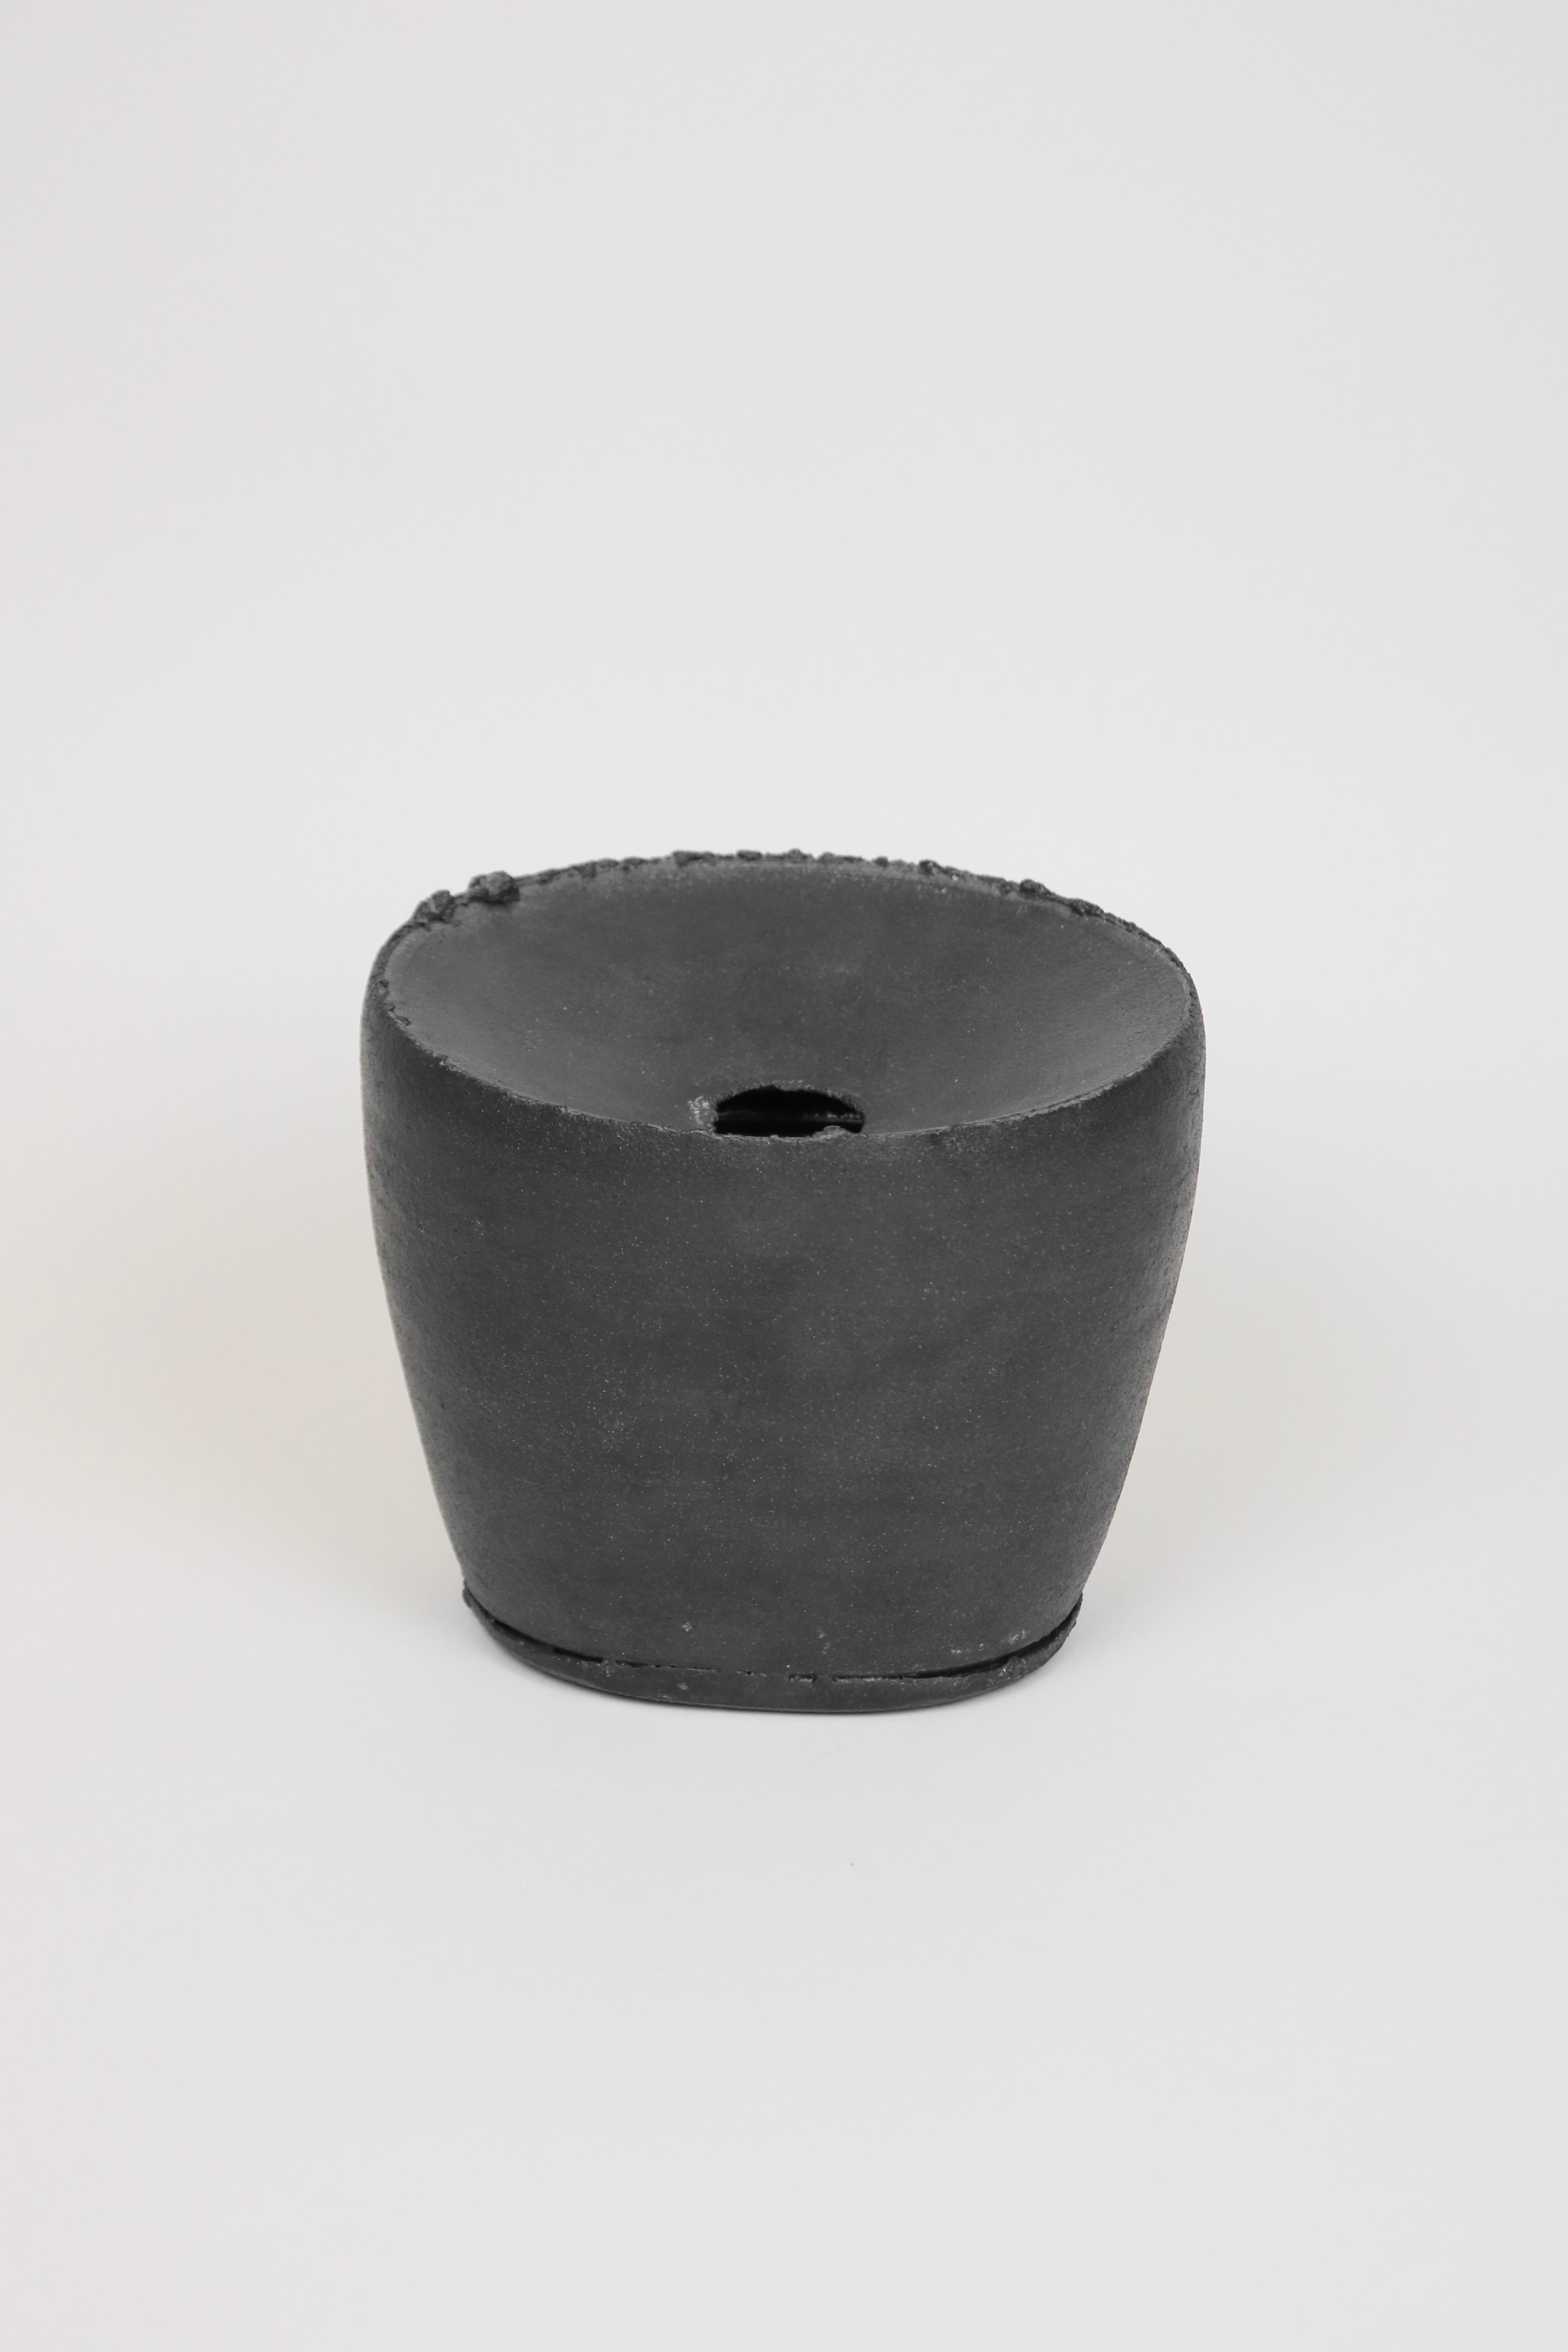 
Vase aus Steingut mit mattschwarzer Glasur und strukturierten Rändern.

Dan Kelly (*1953) wurde in den 70er Jahren an der Camberwell School of Arts and Crafts ausgebildet. Seine Arbeiten werden mit der Drehscheibe gedreht, dann manipuliert und